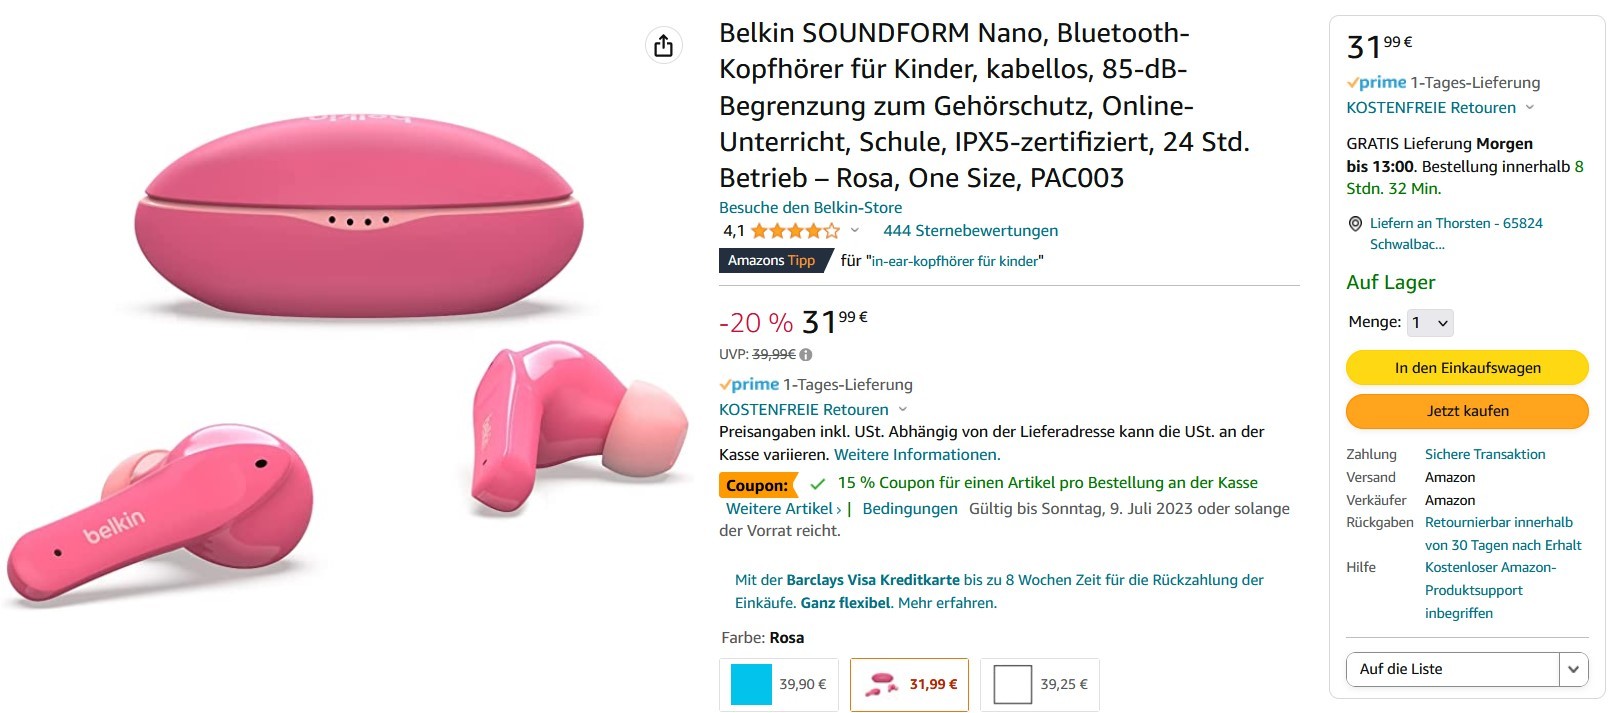 Belkin für Kinder 39,99€ ab In-Ear-Kopfhörer SOUNDFORM statt Bluetooth Nano 27,99€